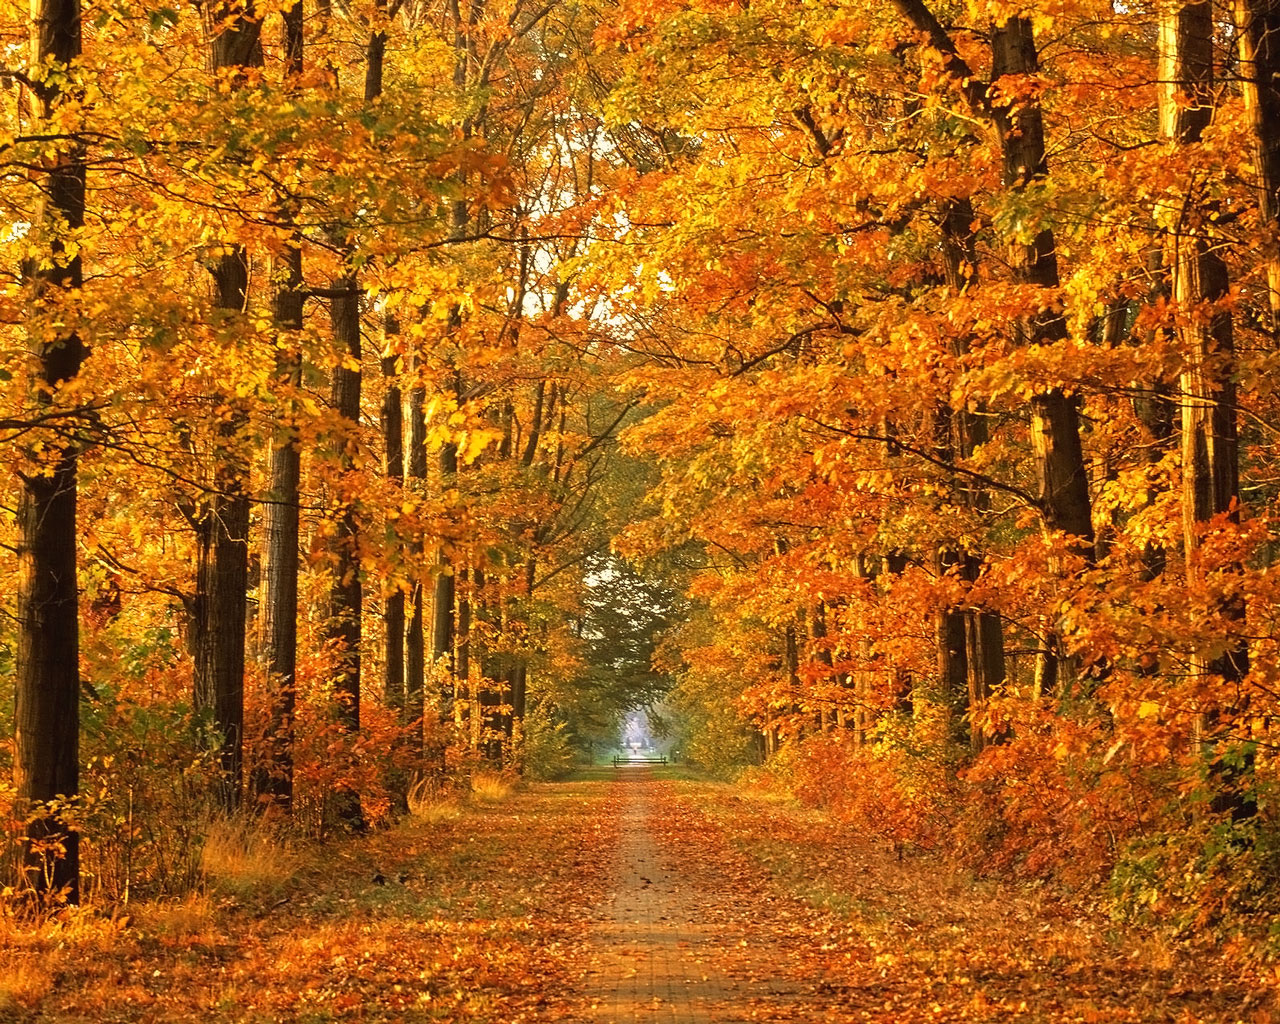  autumn wallpaper widescreen autumn forest wallpaper autumn wallpaper 1280x1024